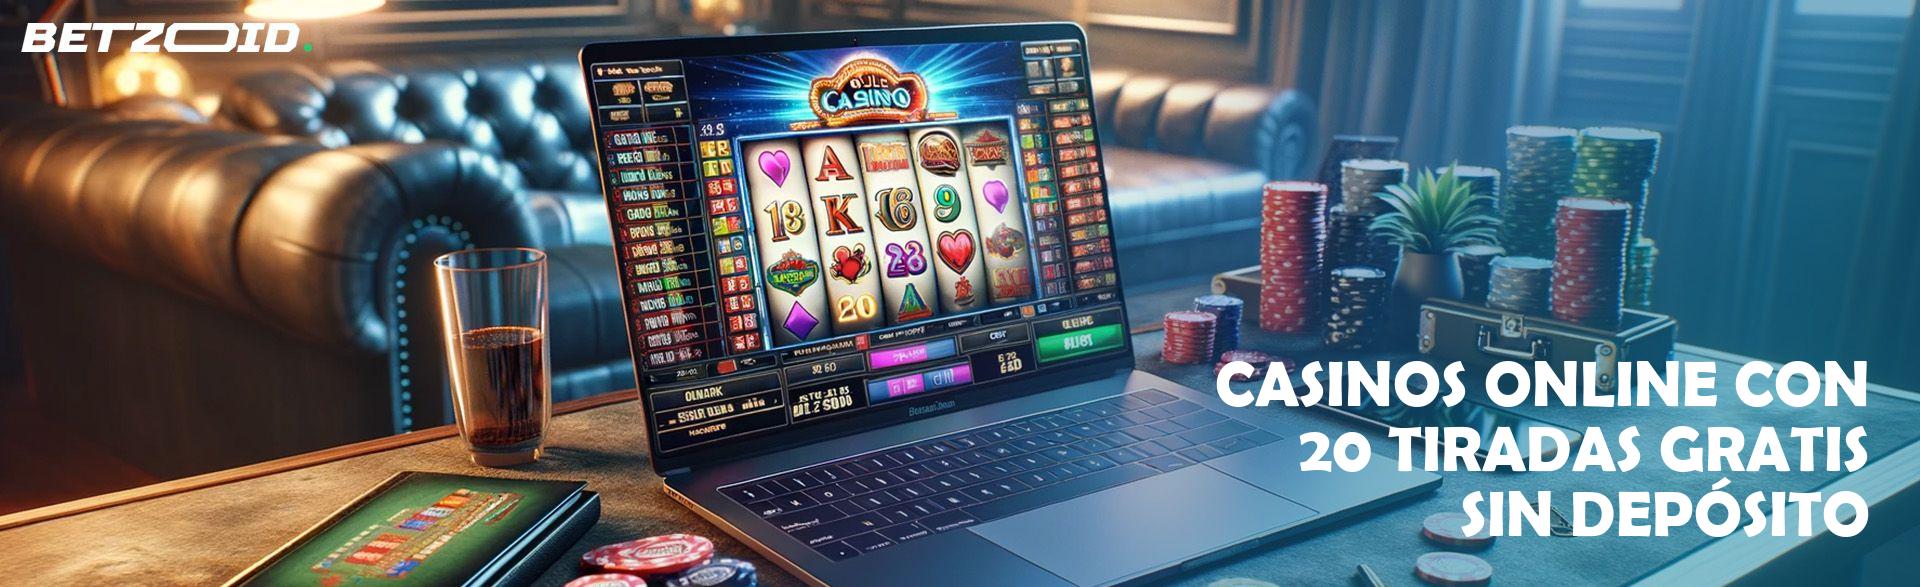 Casinos Online con 20 Tiradas Gratis sin Depósito.